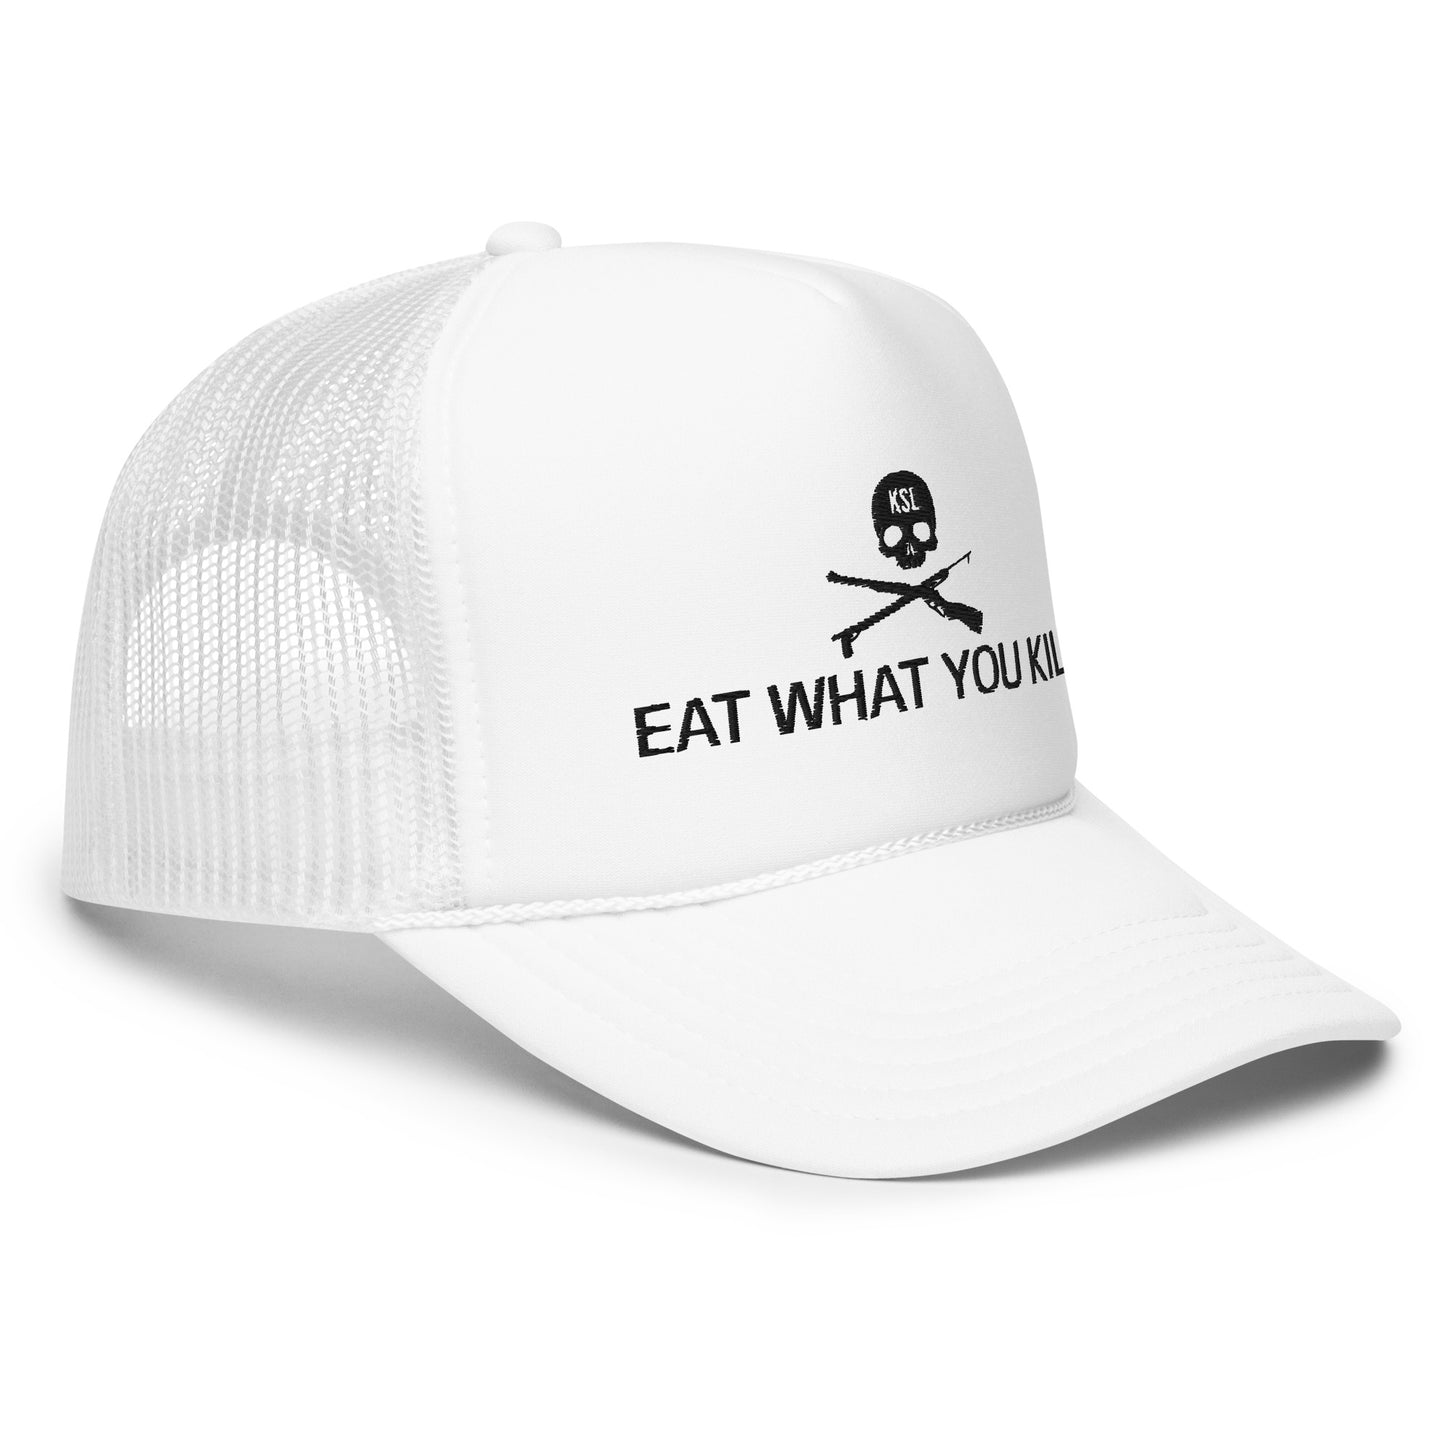 Eat What You Kill Foam Trucker Hat (Black Embroidery)